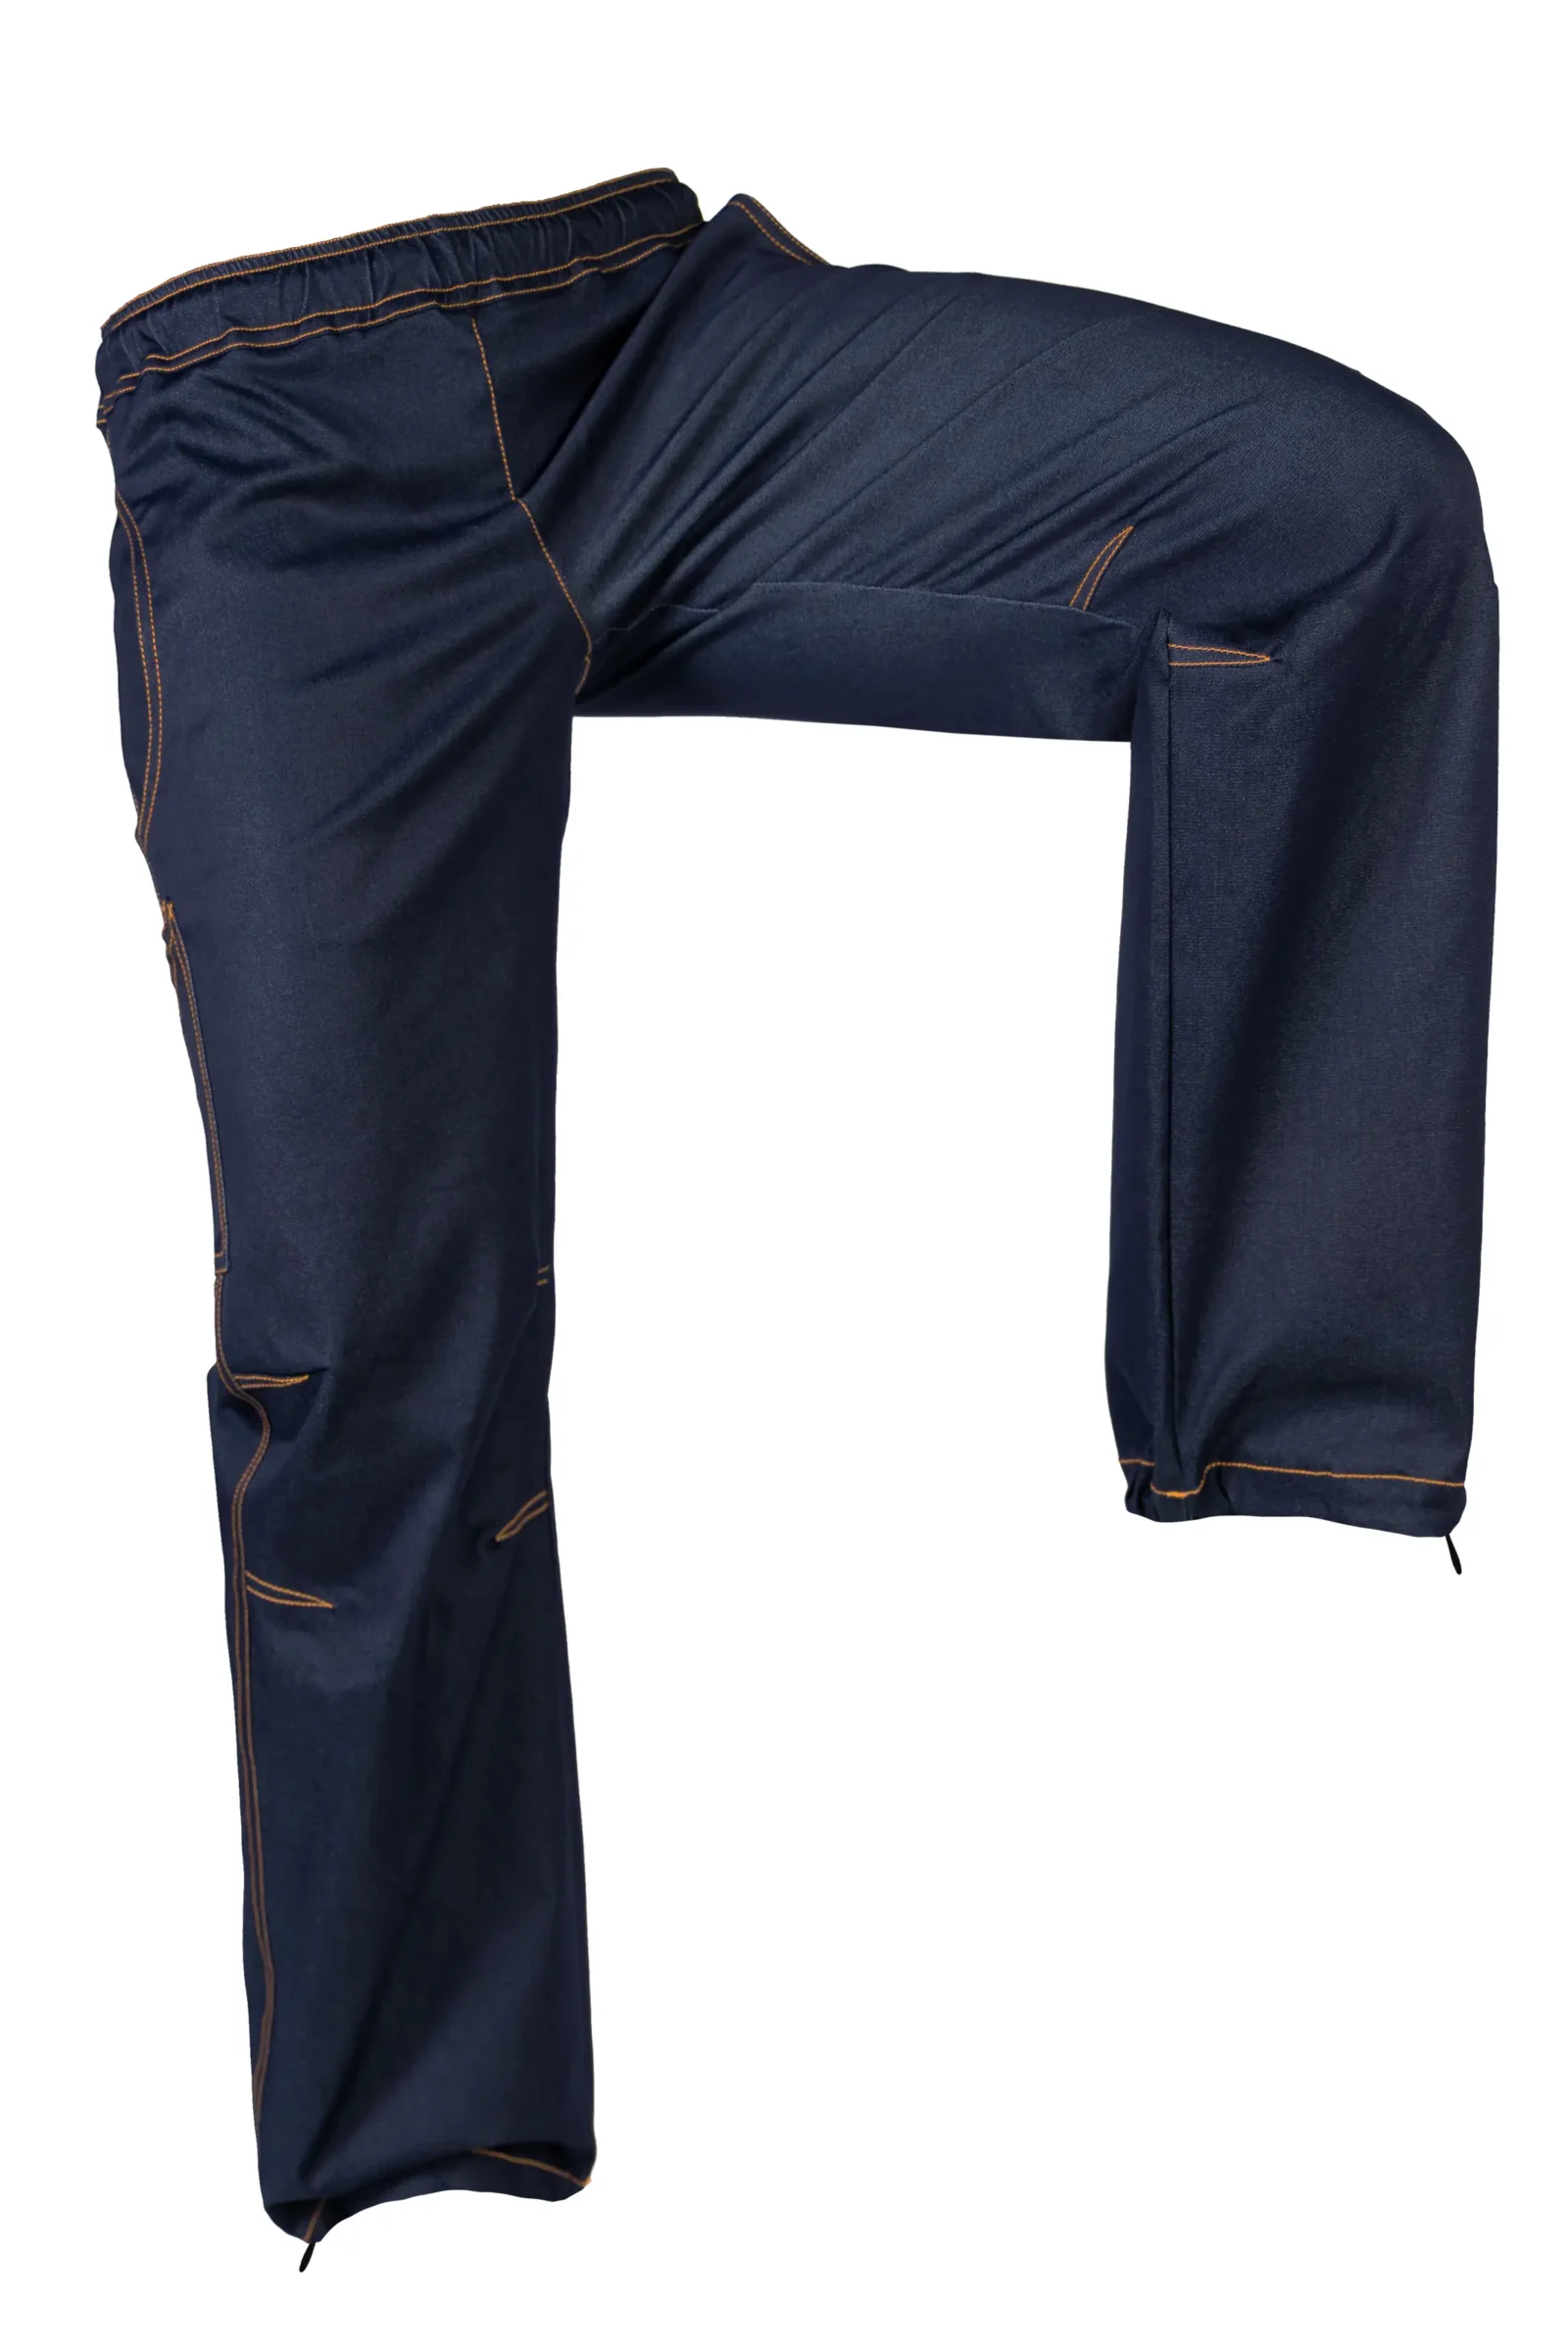 Pantalone Jeans arrampicata da donna - denim filo arancione - VIOLET Monvic